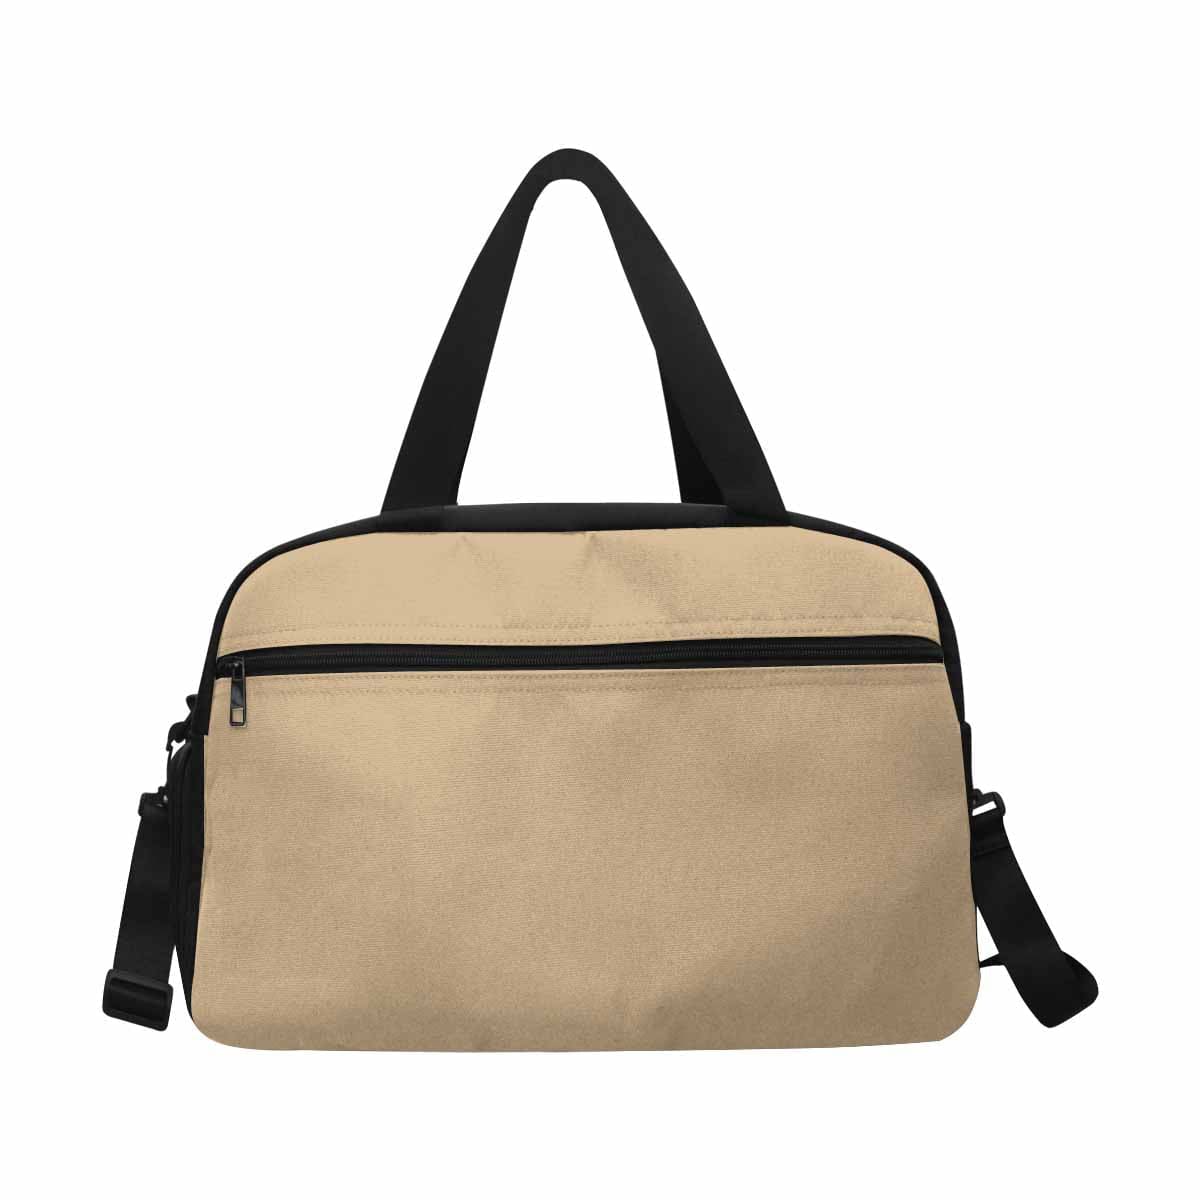 Tan Brown Tote And Crossbody Travel Bag - Bags | Travel Bags | Crossbody